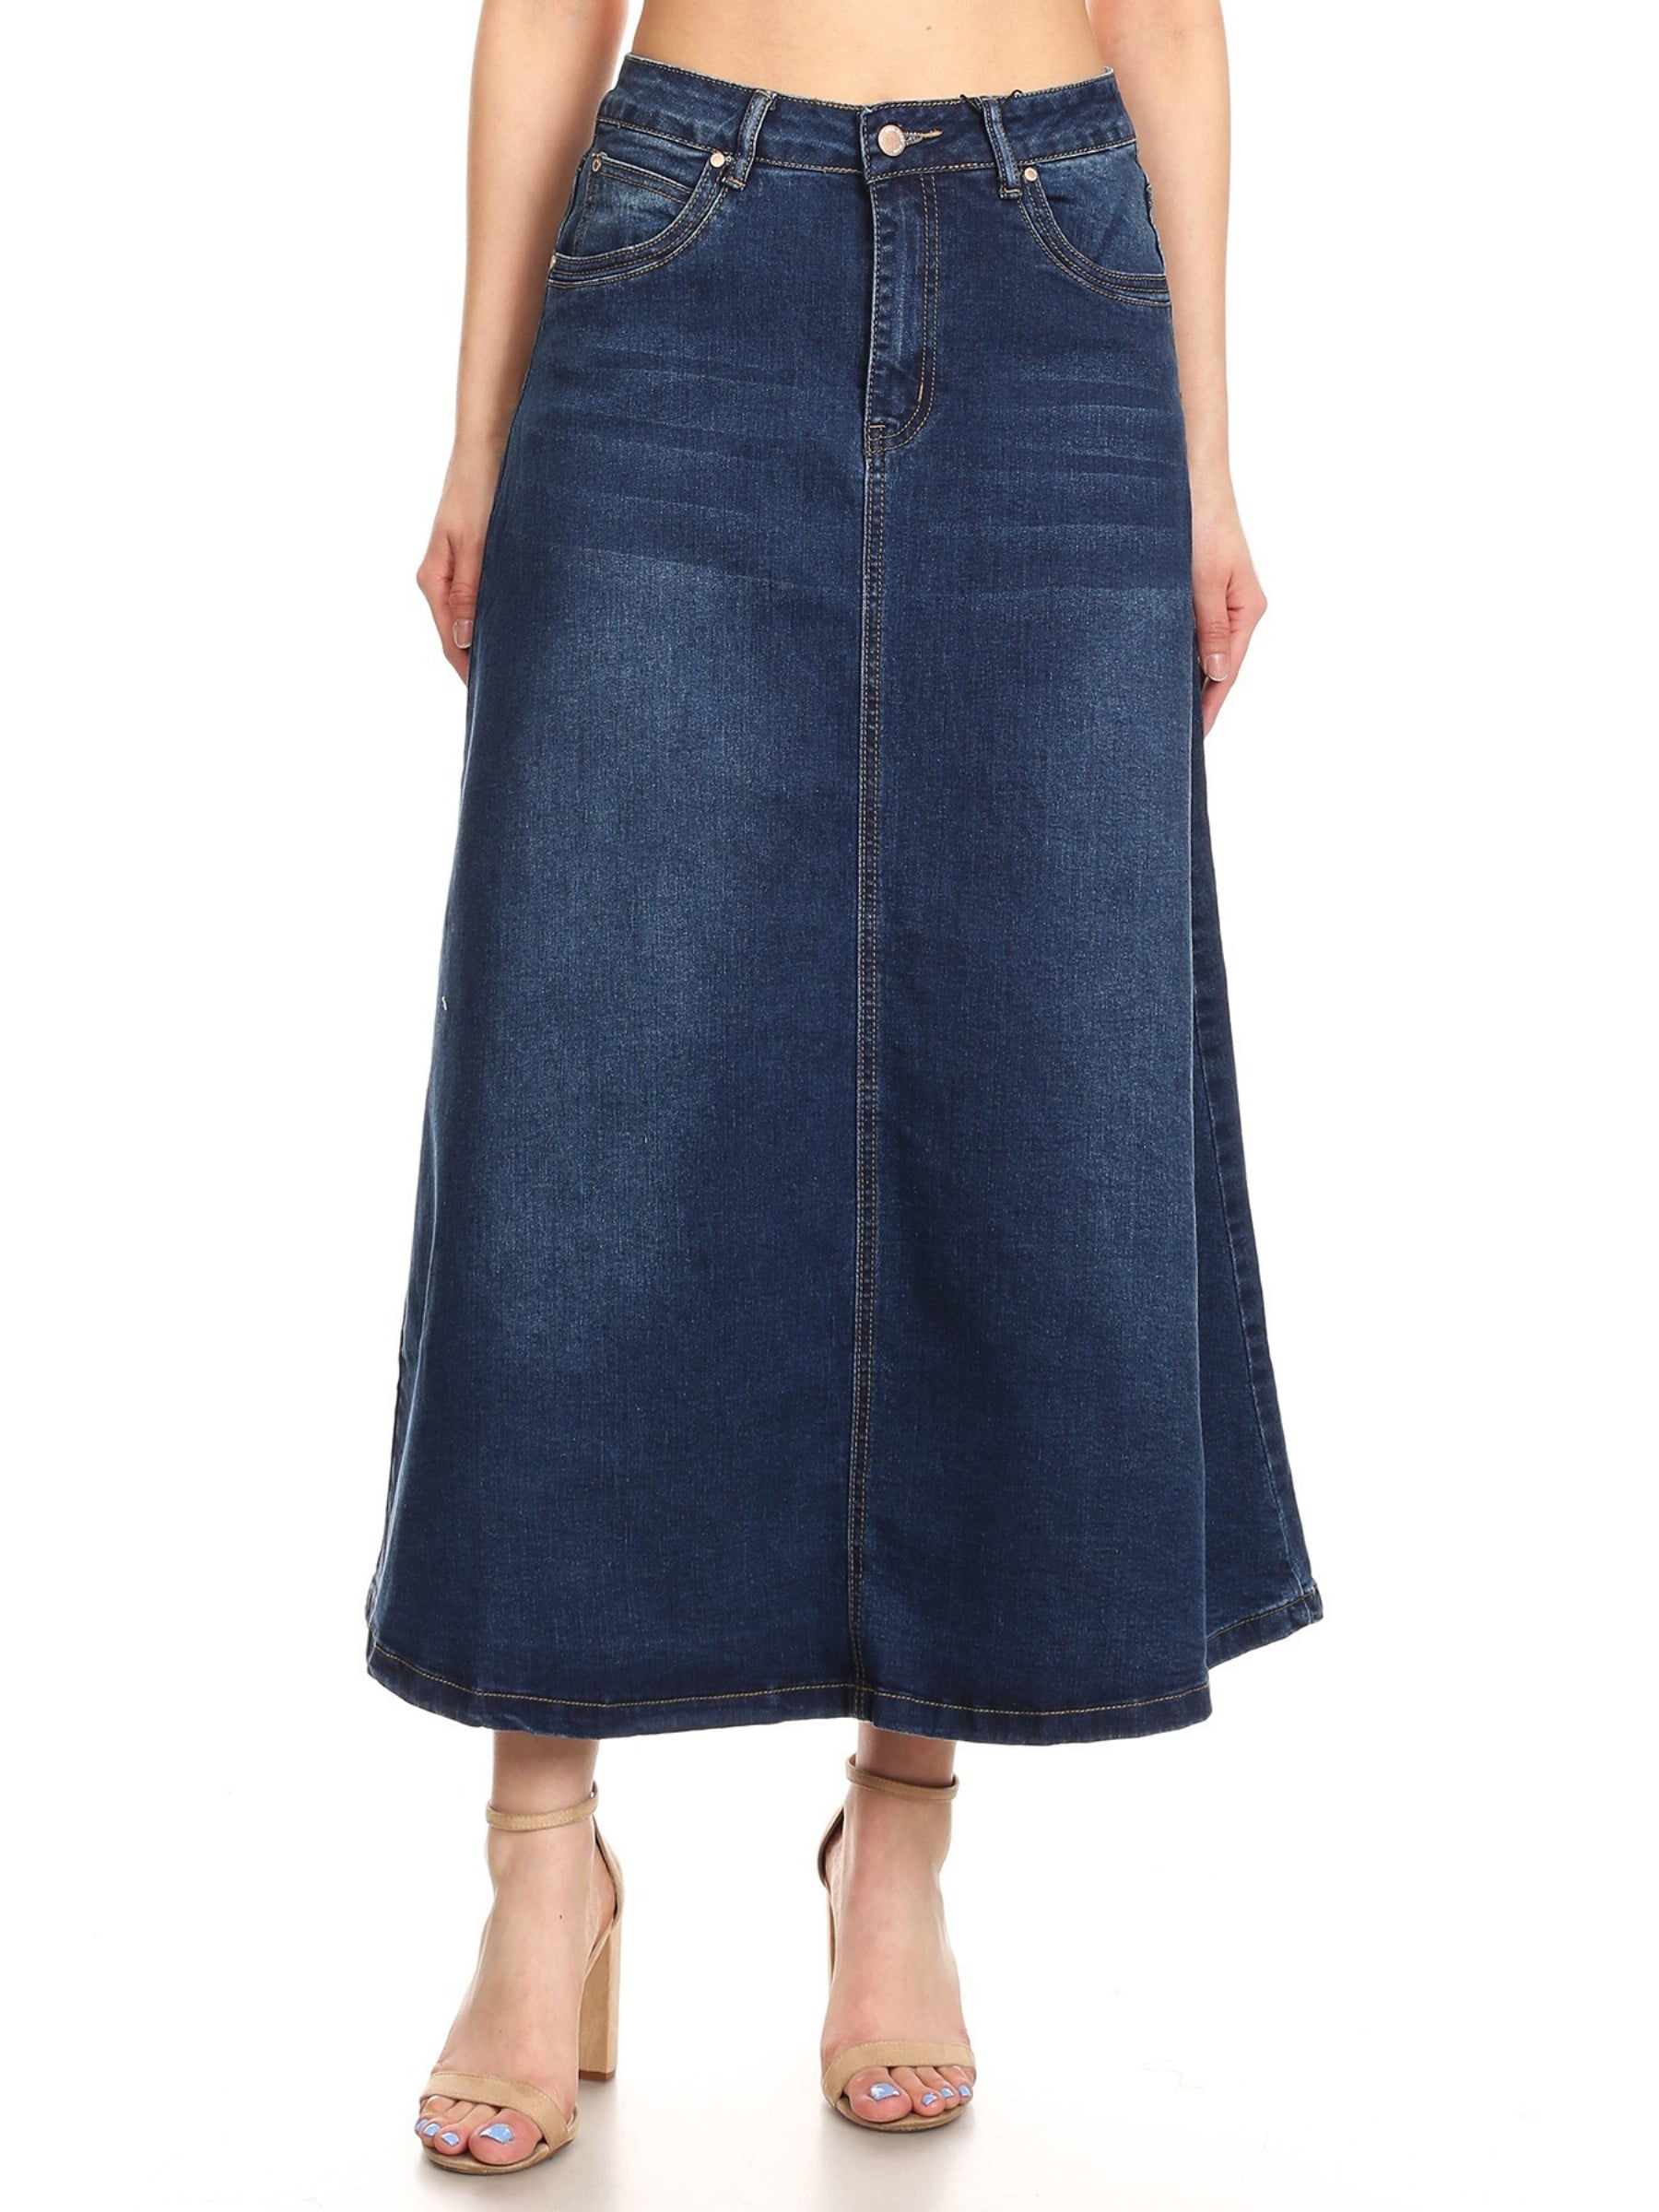 Fashion2love - Women’s Plus/Junior size Mid Rise A-Line Long Jeans Maxi